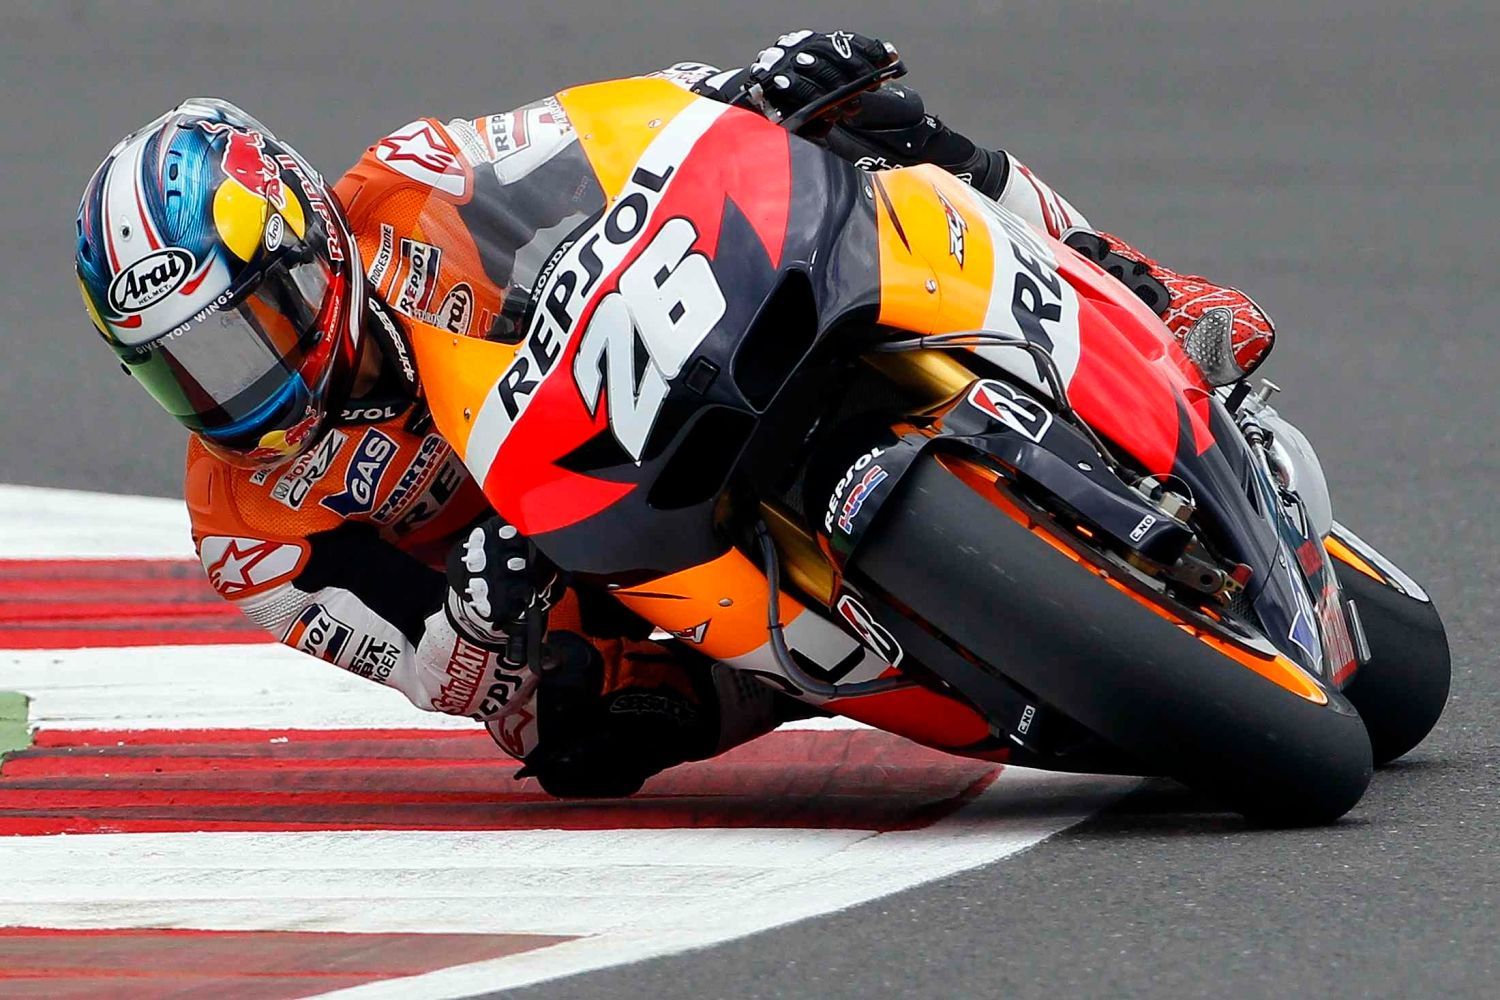 Španělský motocyklový jezdec Hondy, Dani Pedrosa v kategorii MotoGP na Grand Prix Velké Británie 2012